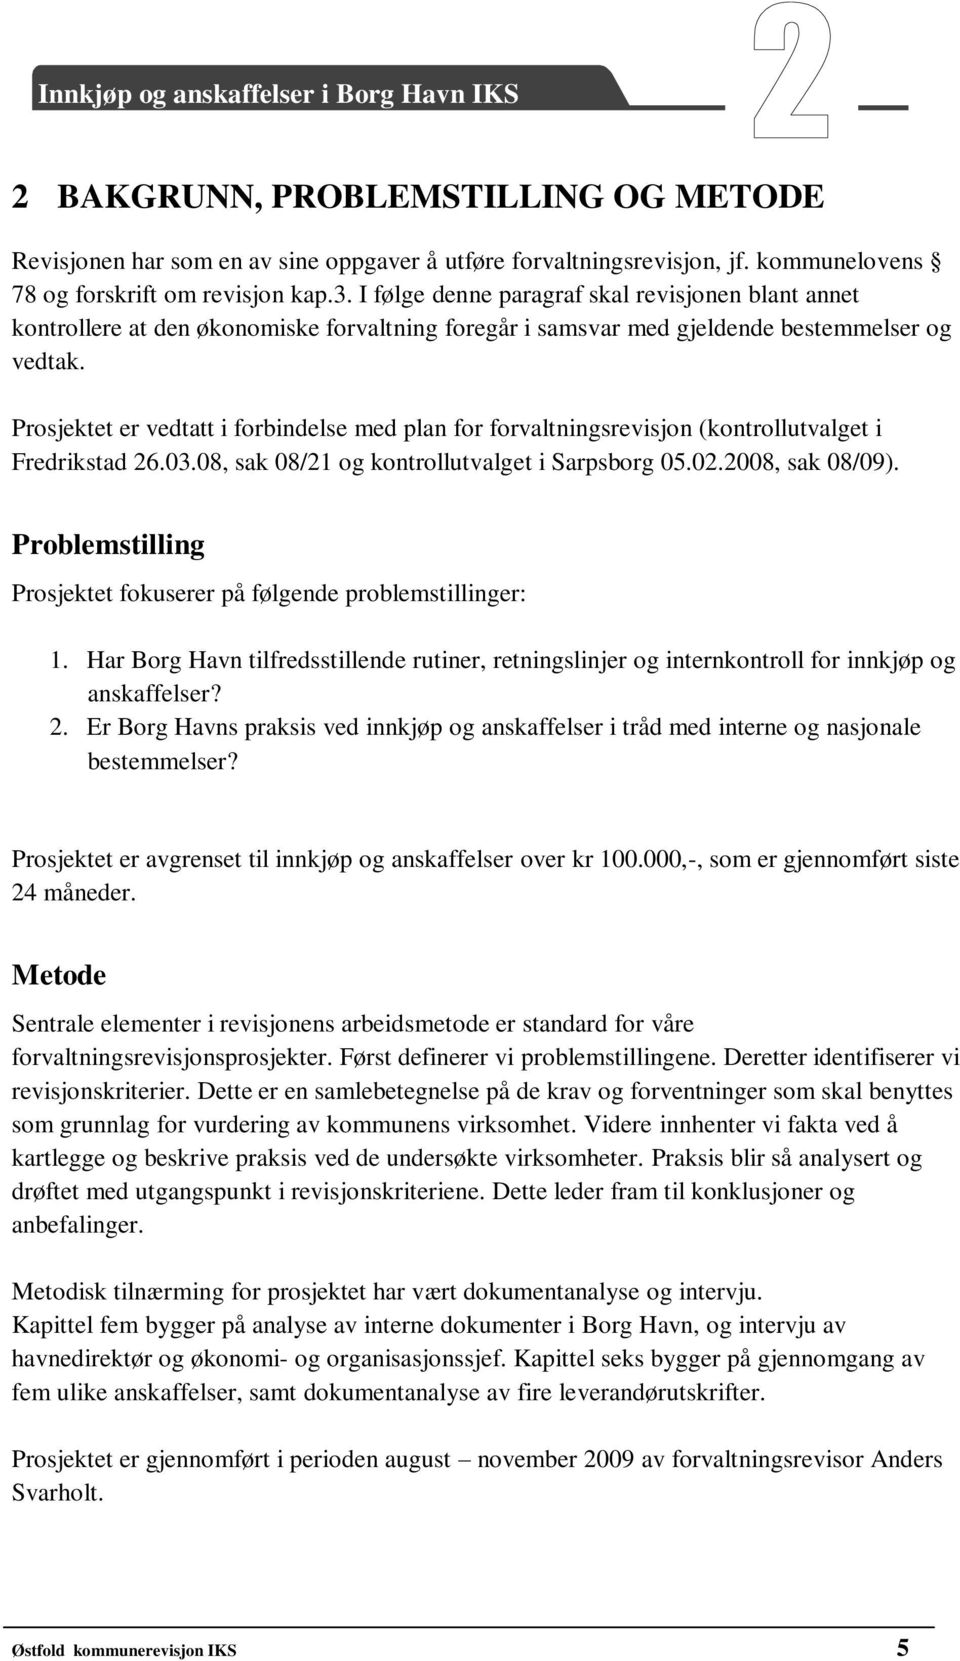 Prosjektet er vedtatt i forbindelse med plan for forvaltningsrevisjon (kontrollutvalget i Fredrikstad 26.03.08, sak 08/21 og kontrollutvalget i Sarpsborg 05.02.2008, sak 08/09).